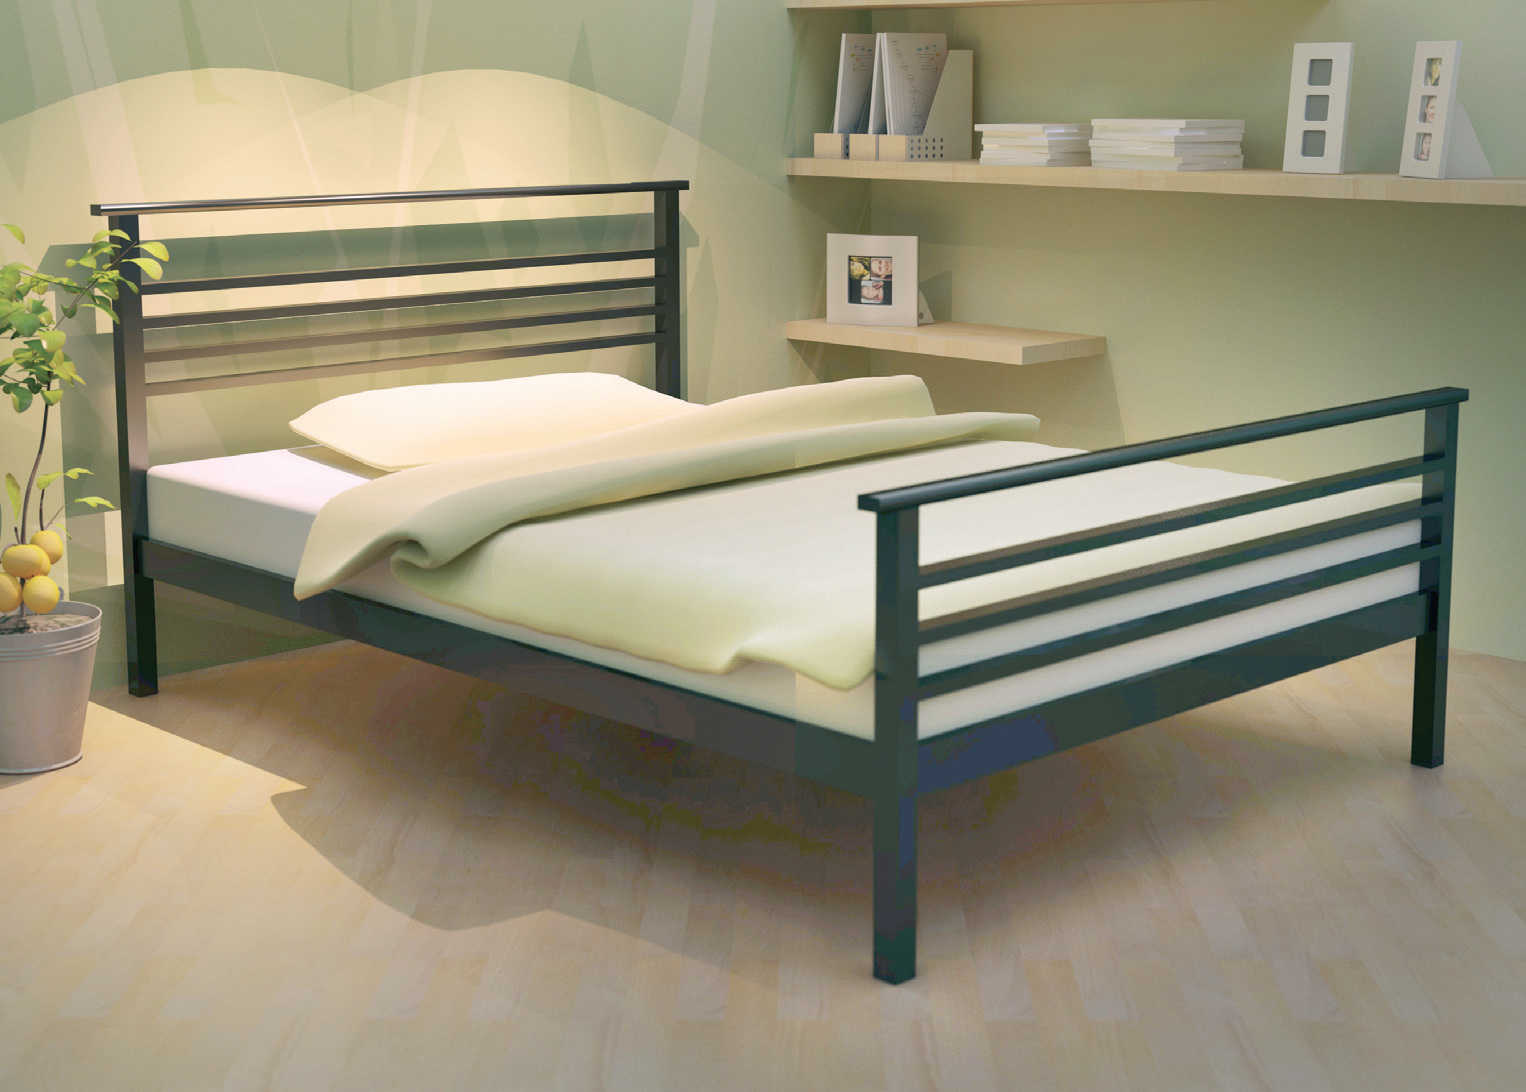 Акция на кровать - 10% при покупке кровати с матрасом . 